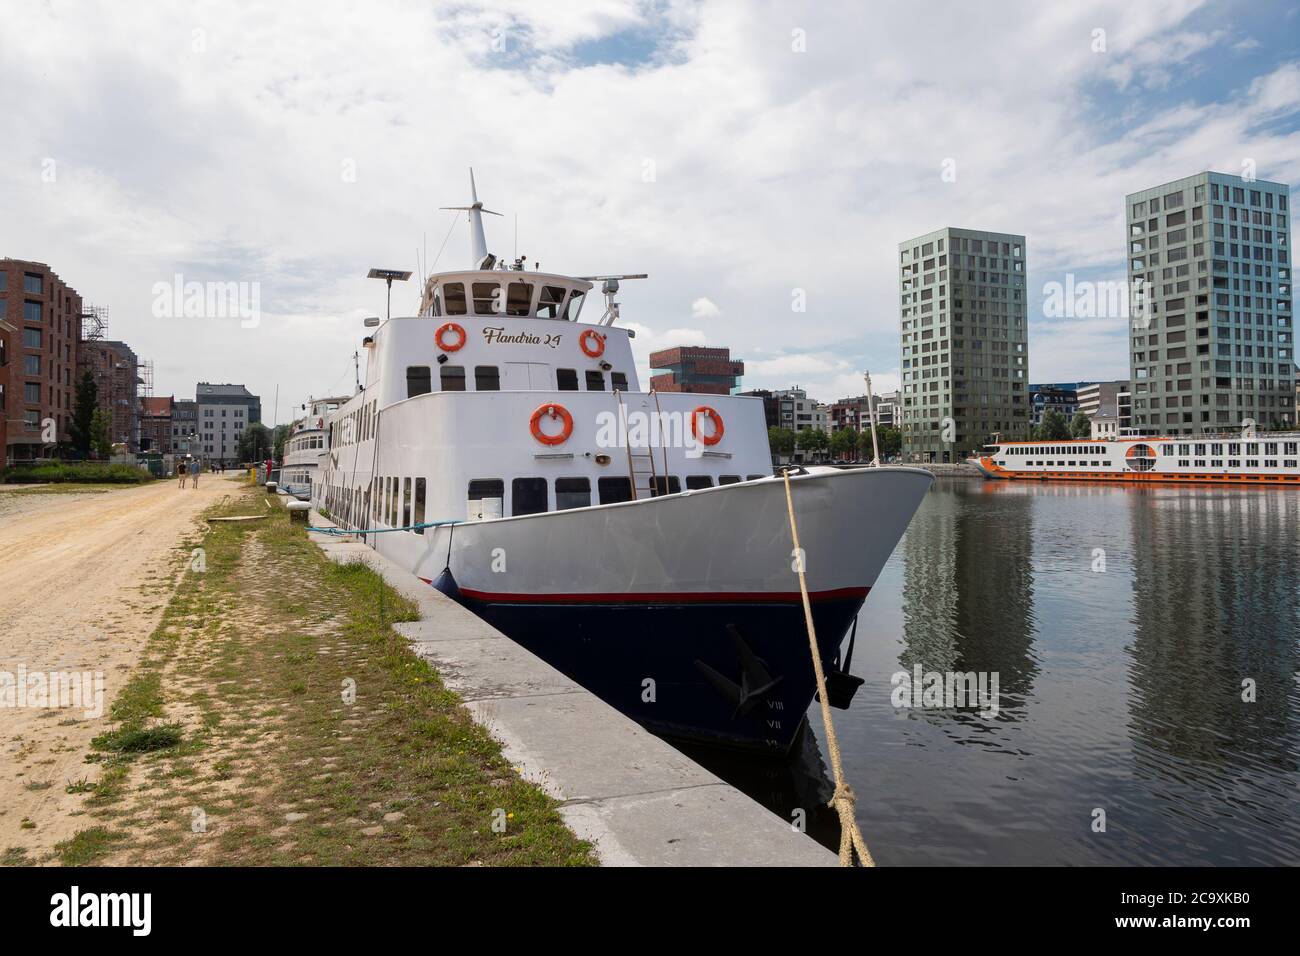 Amberes, Bélgica, 19 de julio de 2020, el barco Flandria de Amberes es el lugar perfecto para los viajes diarios de Scheldt Foto de stock